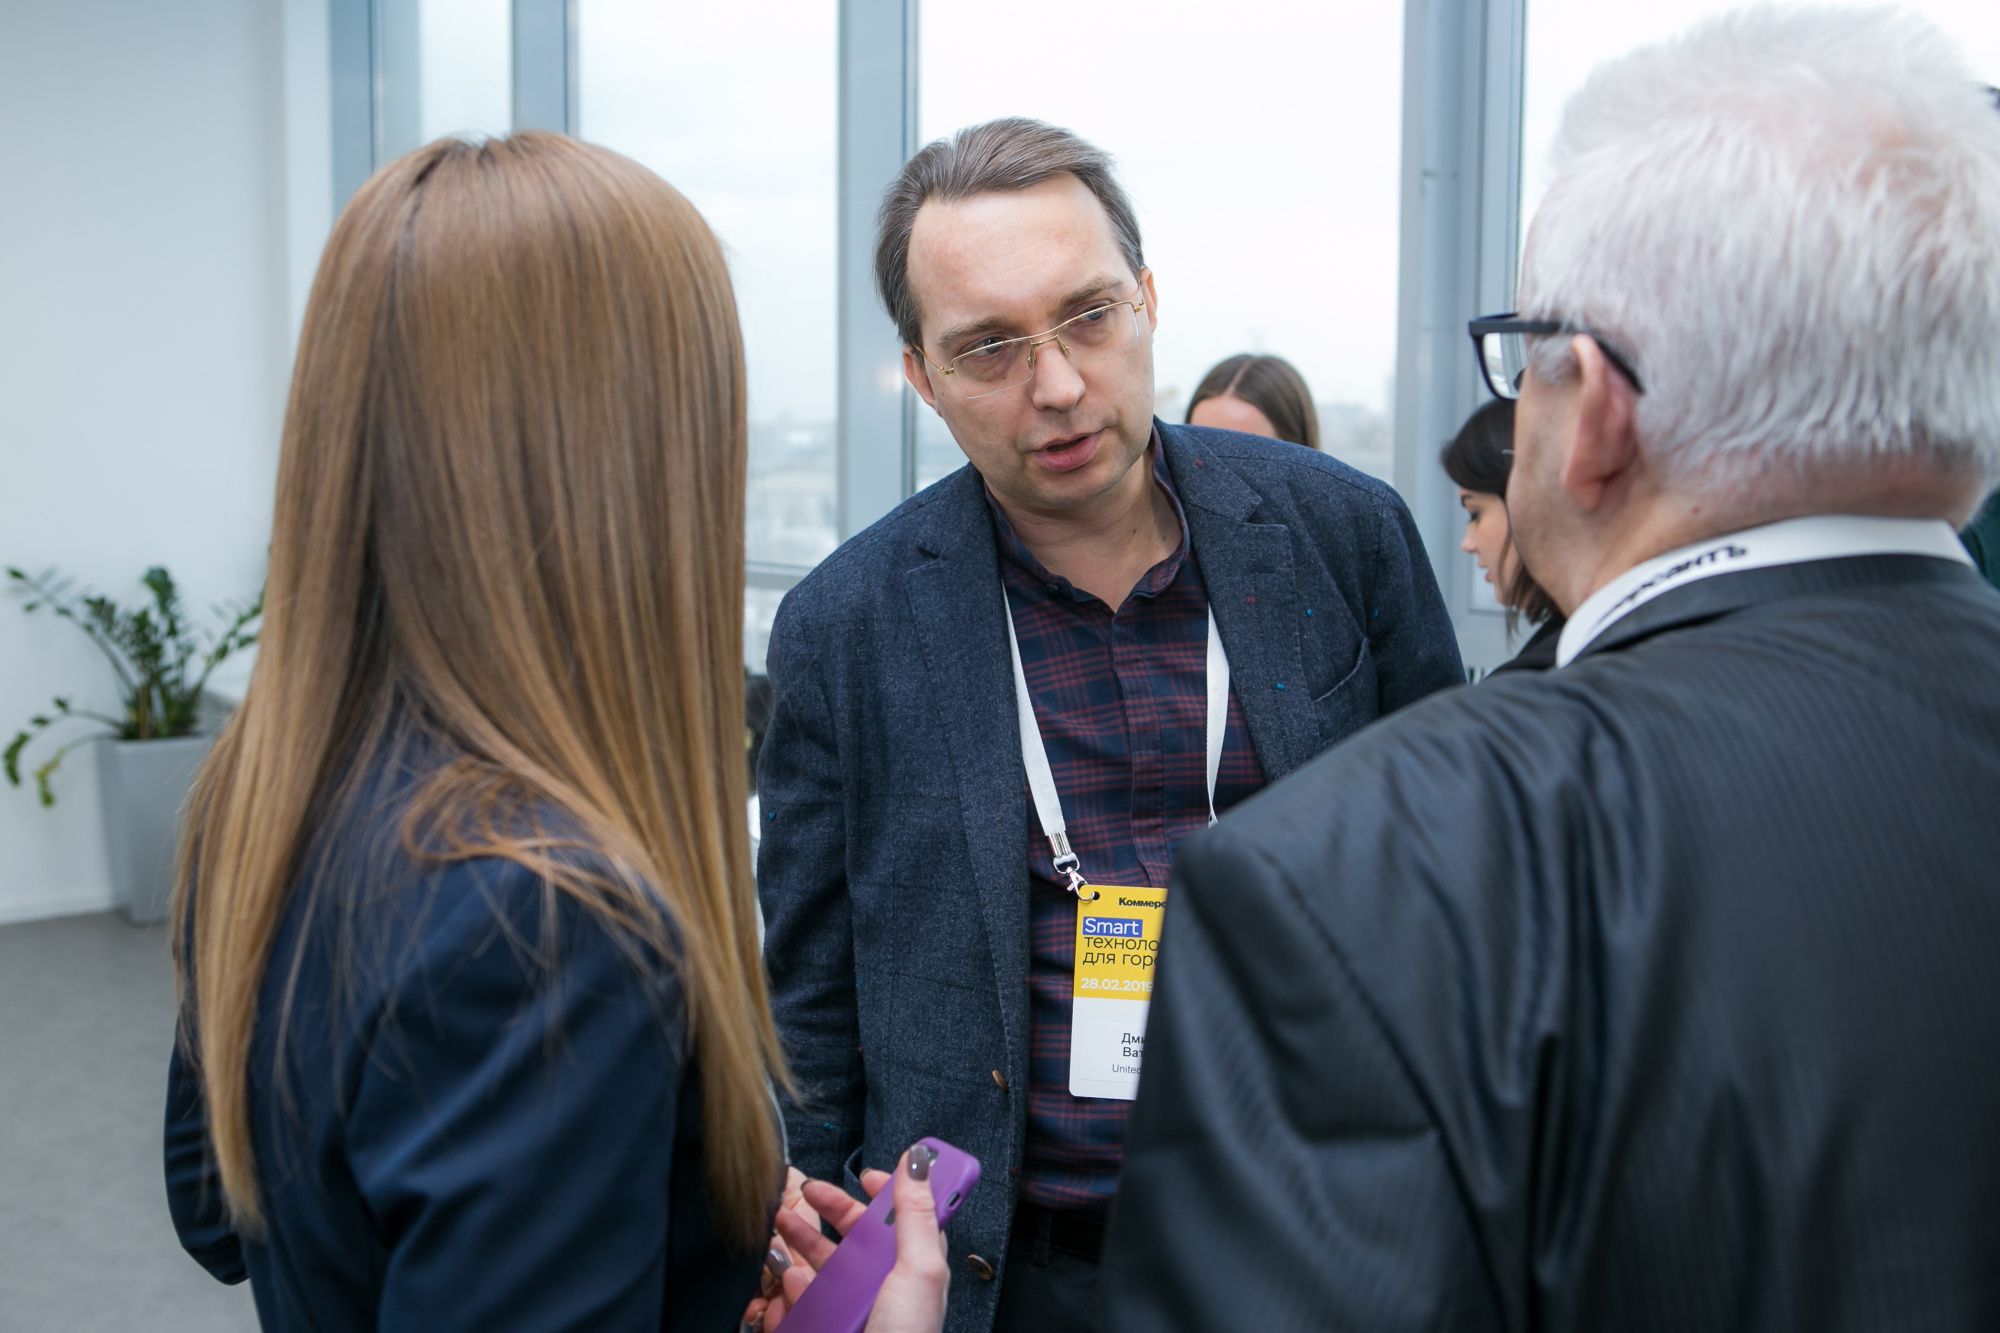 Генеральный директор United 3D Labs Дмитрий Ватулин на конференции КоммерсантЪ «Smart-технологии для города»